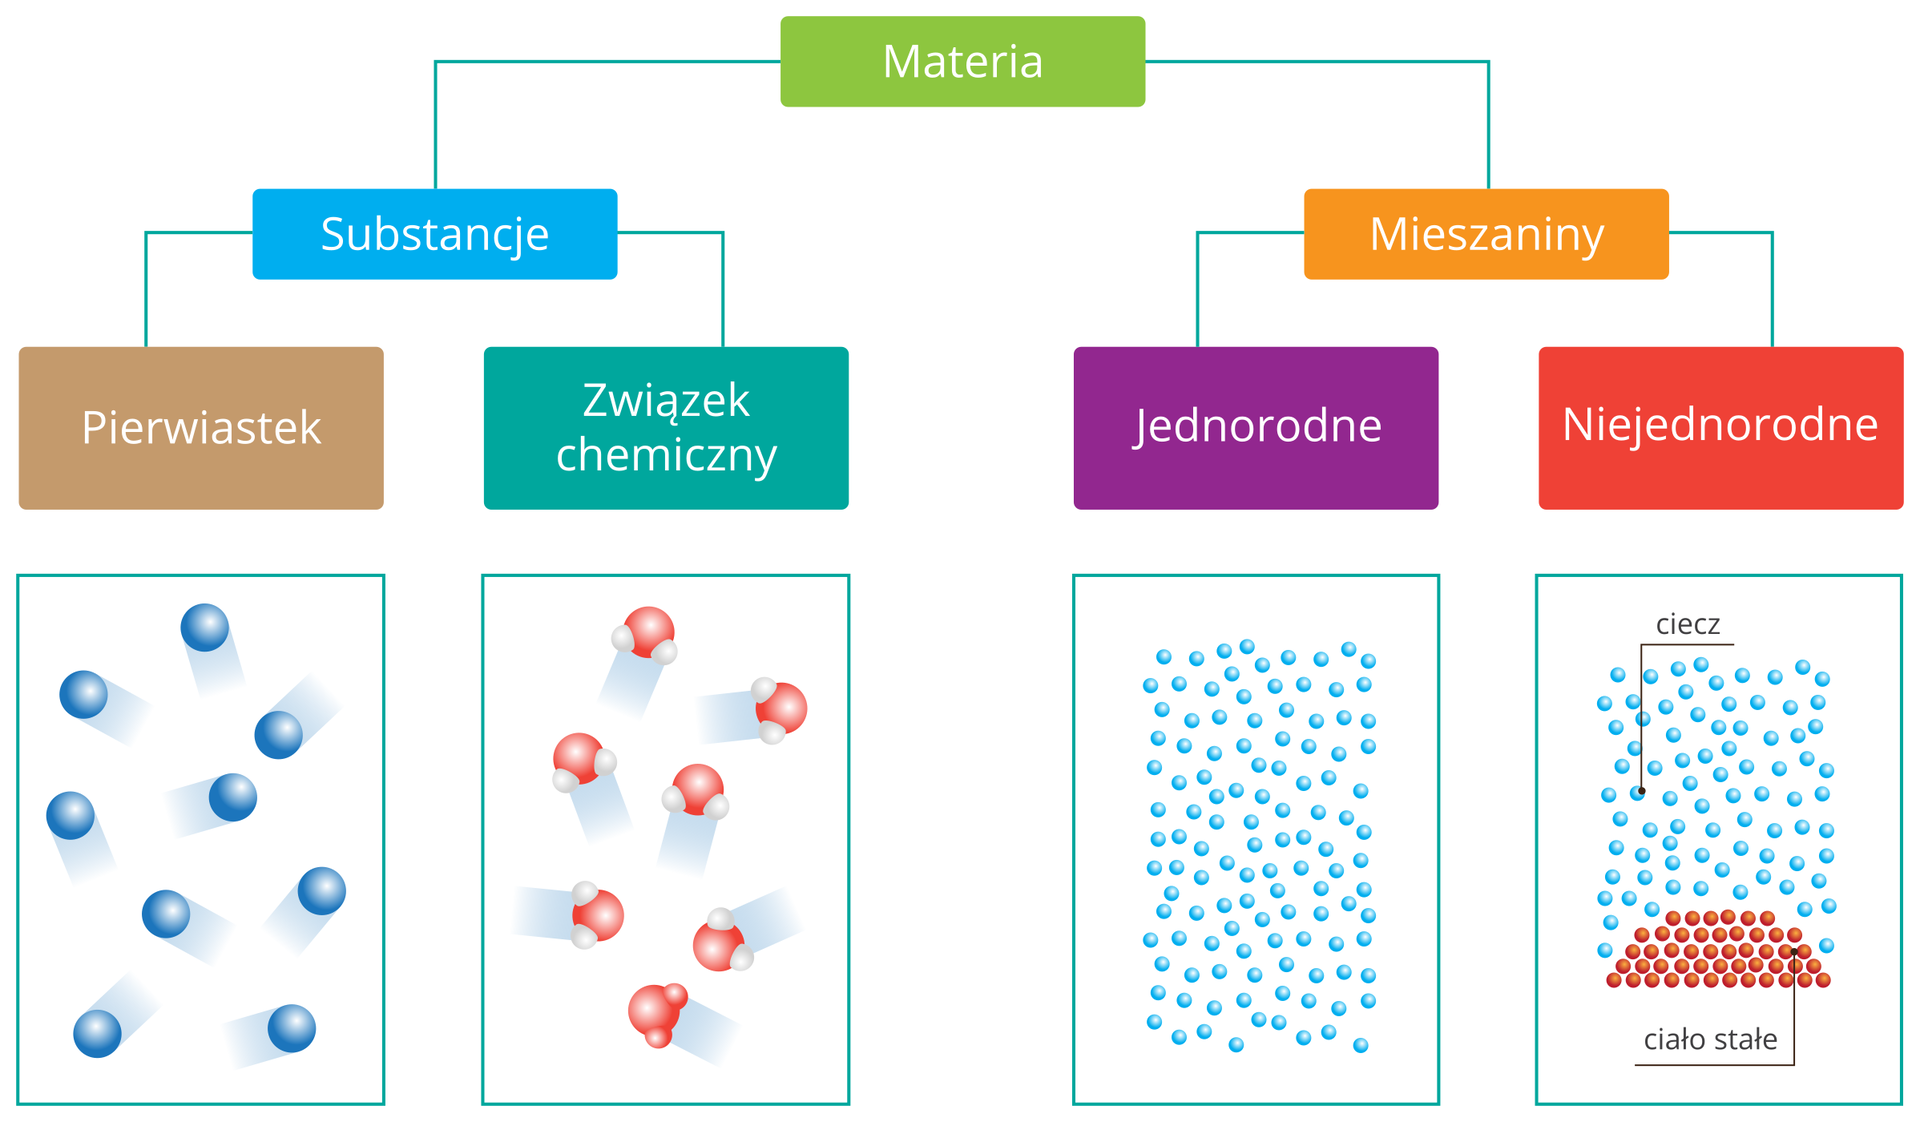 Schemat przedstawiający kryteria podziału materii. Wynika z niego, że materię można podzielić na substancje i mieszaniny. Substancje dzielą się na proste pierwiastki i związki chemiczne, a mieszaniny na jednorodne i niejednorodne. Każdej z czterech grup przyporządkowany jest rysunek ilustrujący wygląd i rozmieszczenie cząstek w danym typie materii.